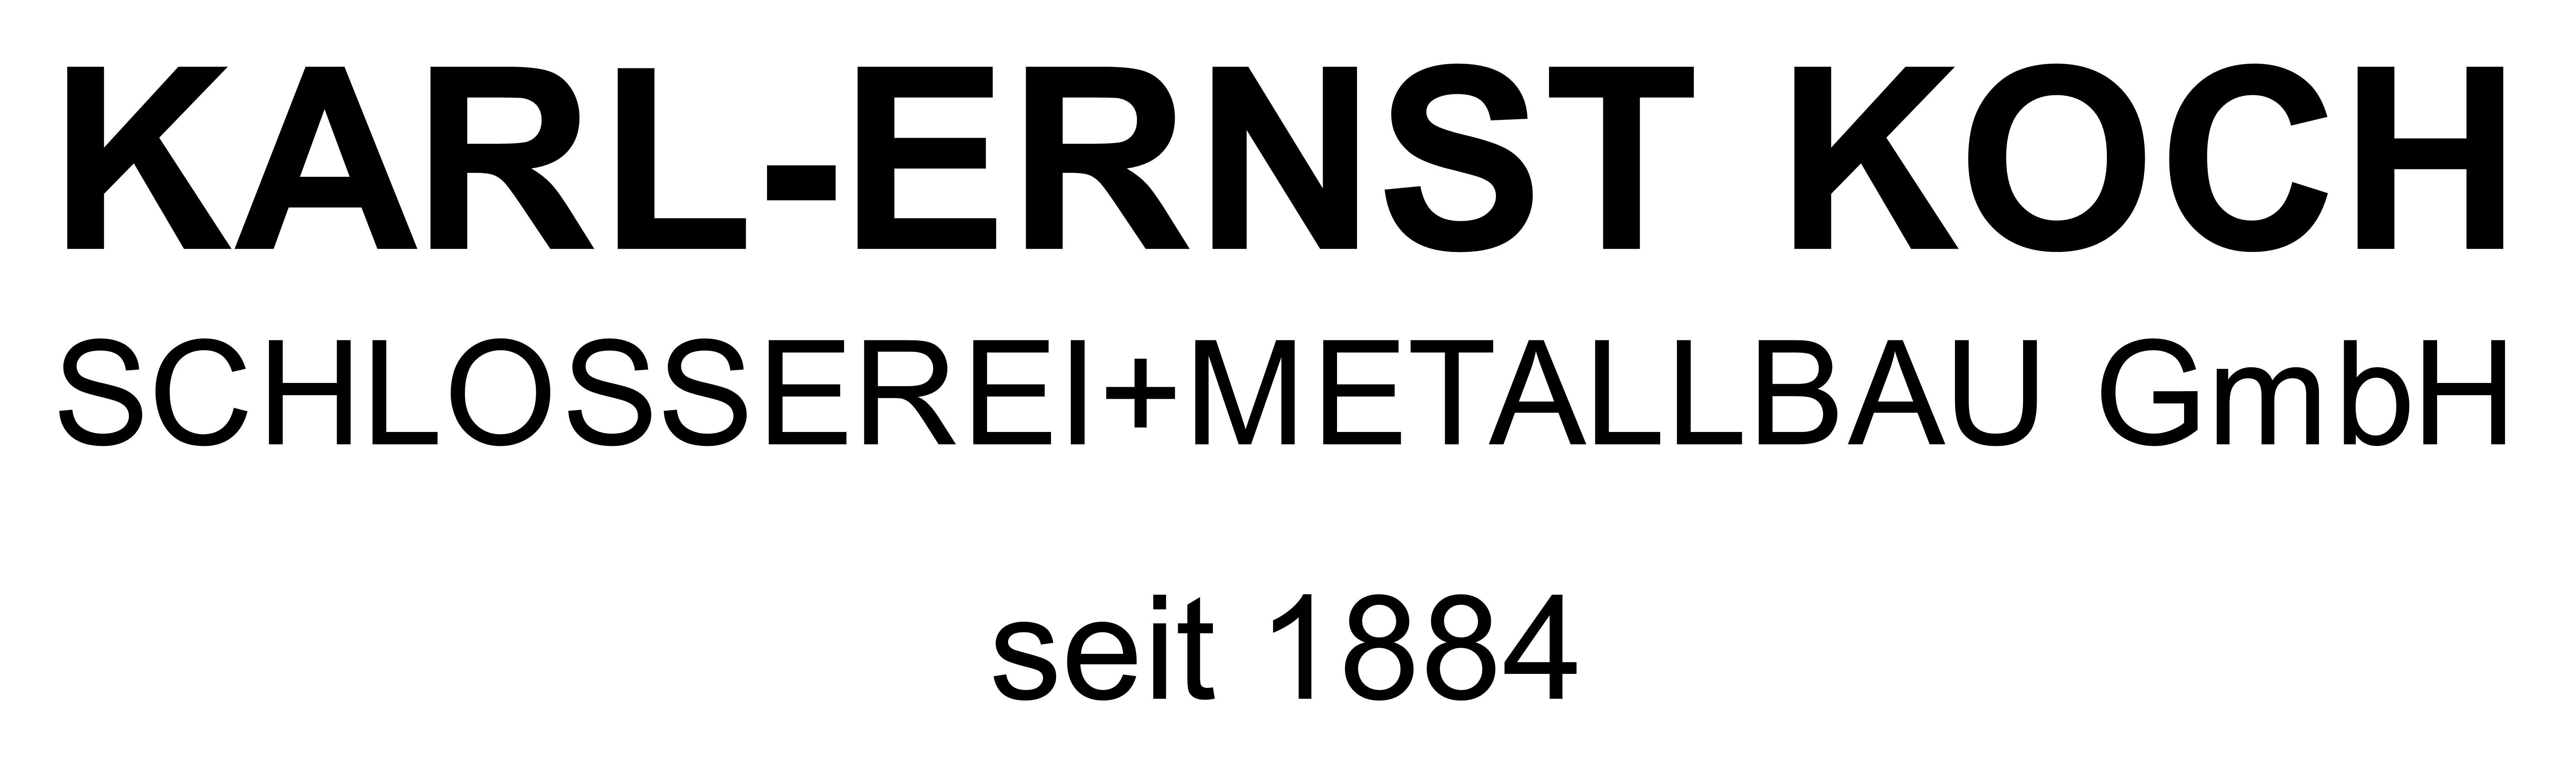 Karl-Ernst Koch Schlosserei und Metallbau GmbH